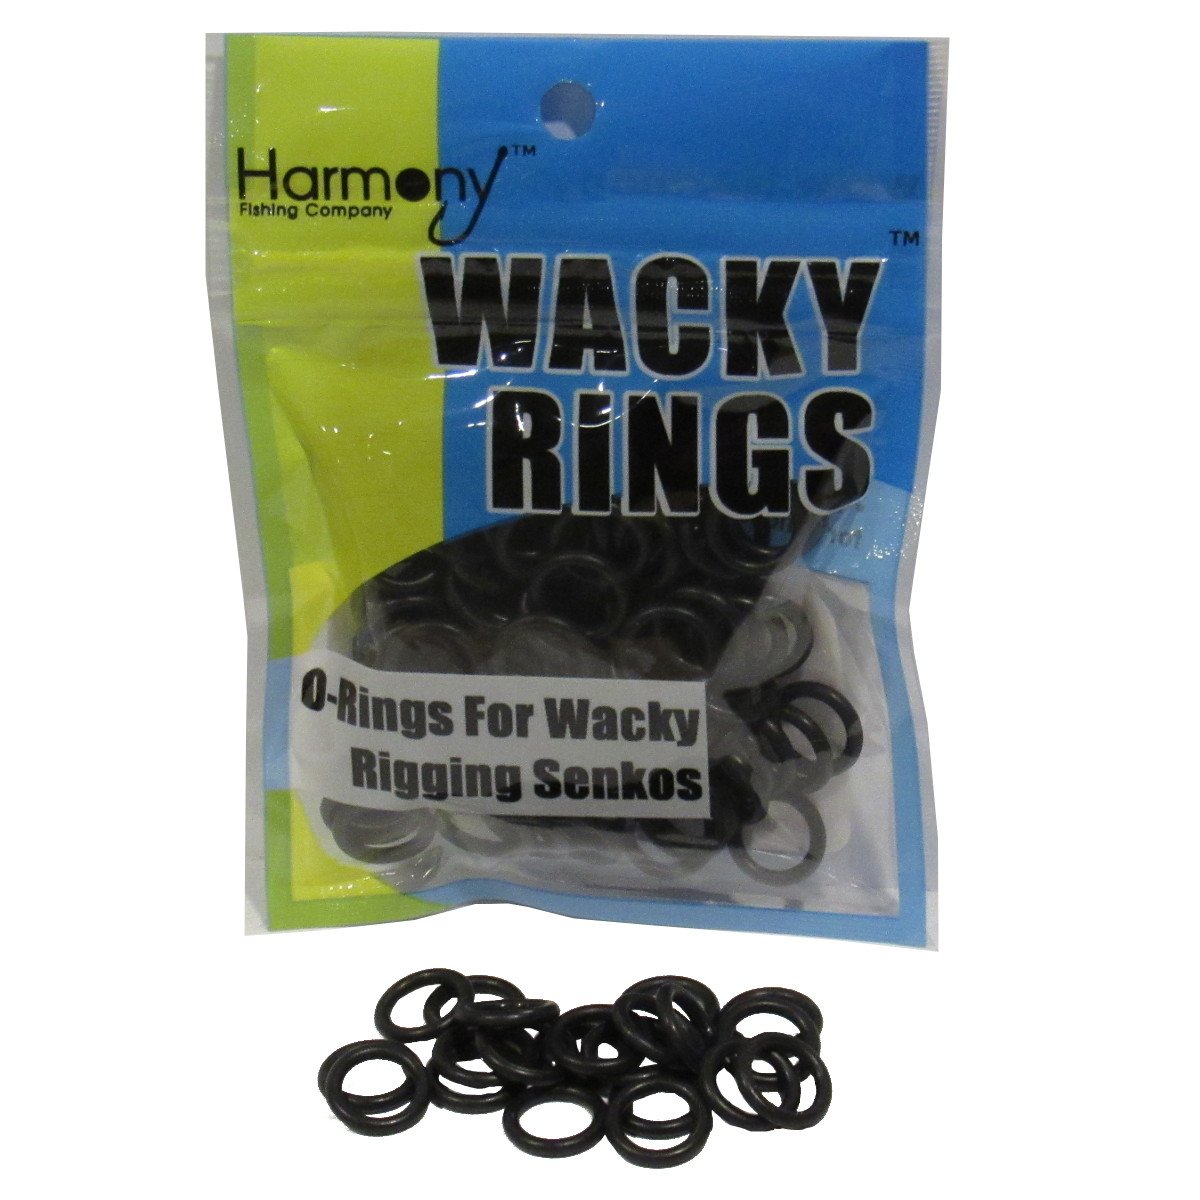 O-Rings for Wacky Rigging Senko Worms Wacky Rings 100 orings for 6 Senkos 